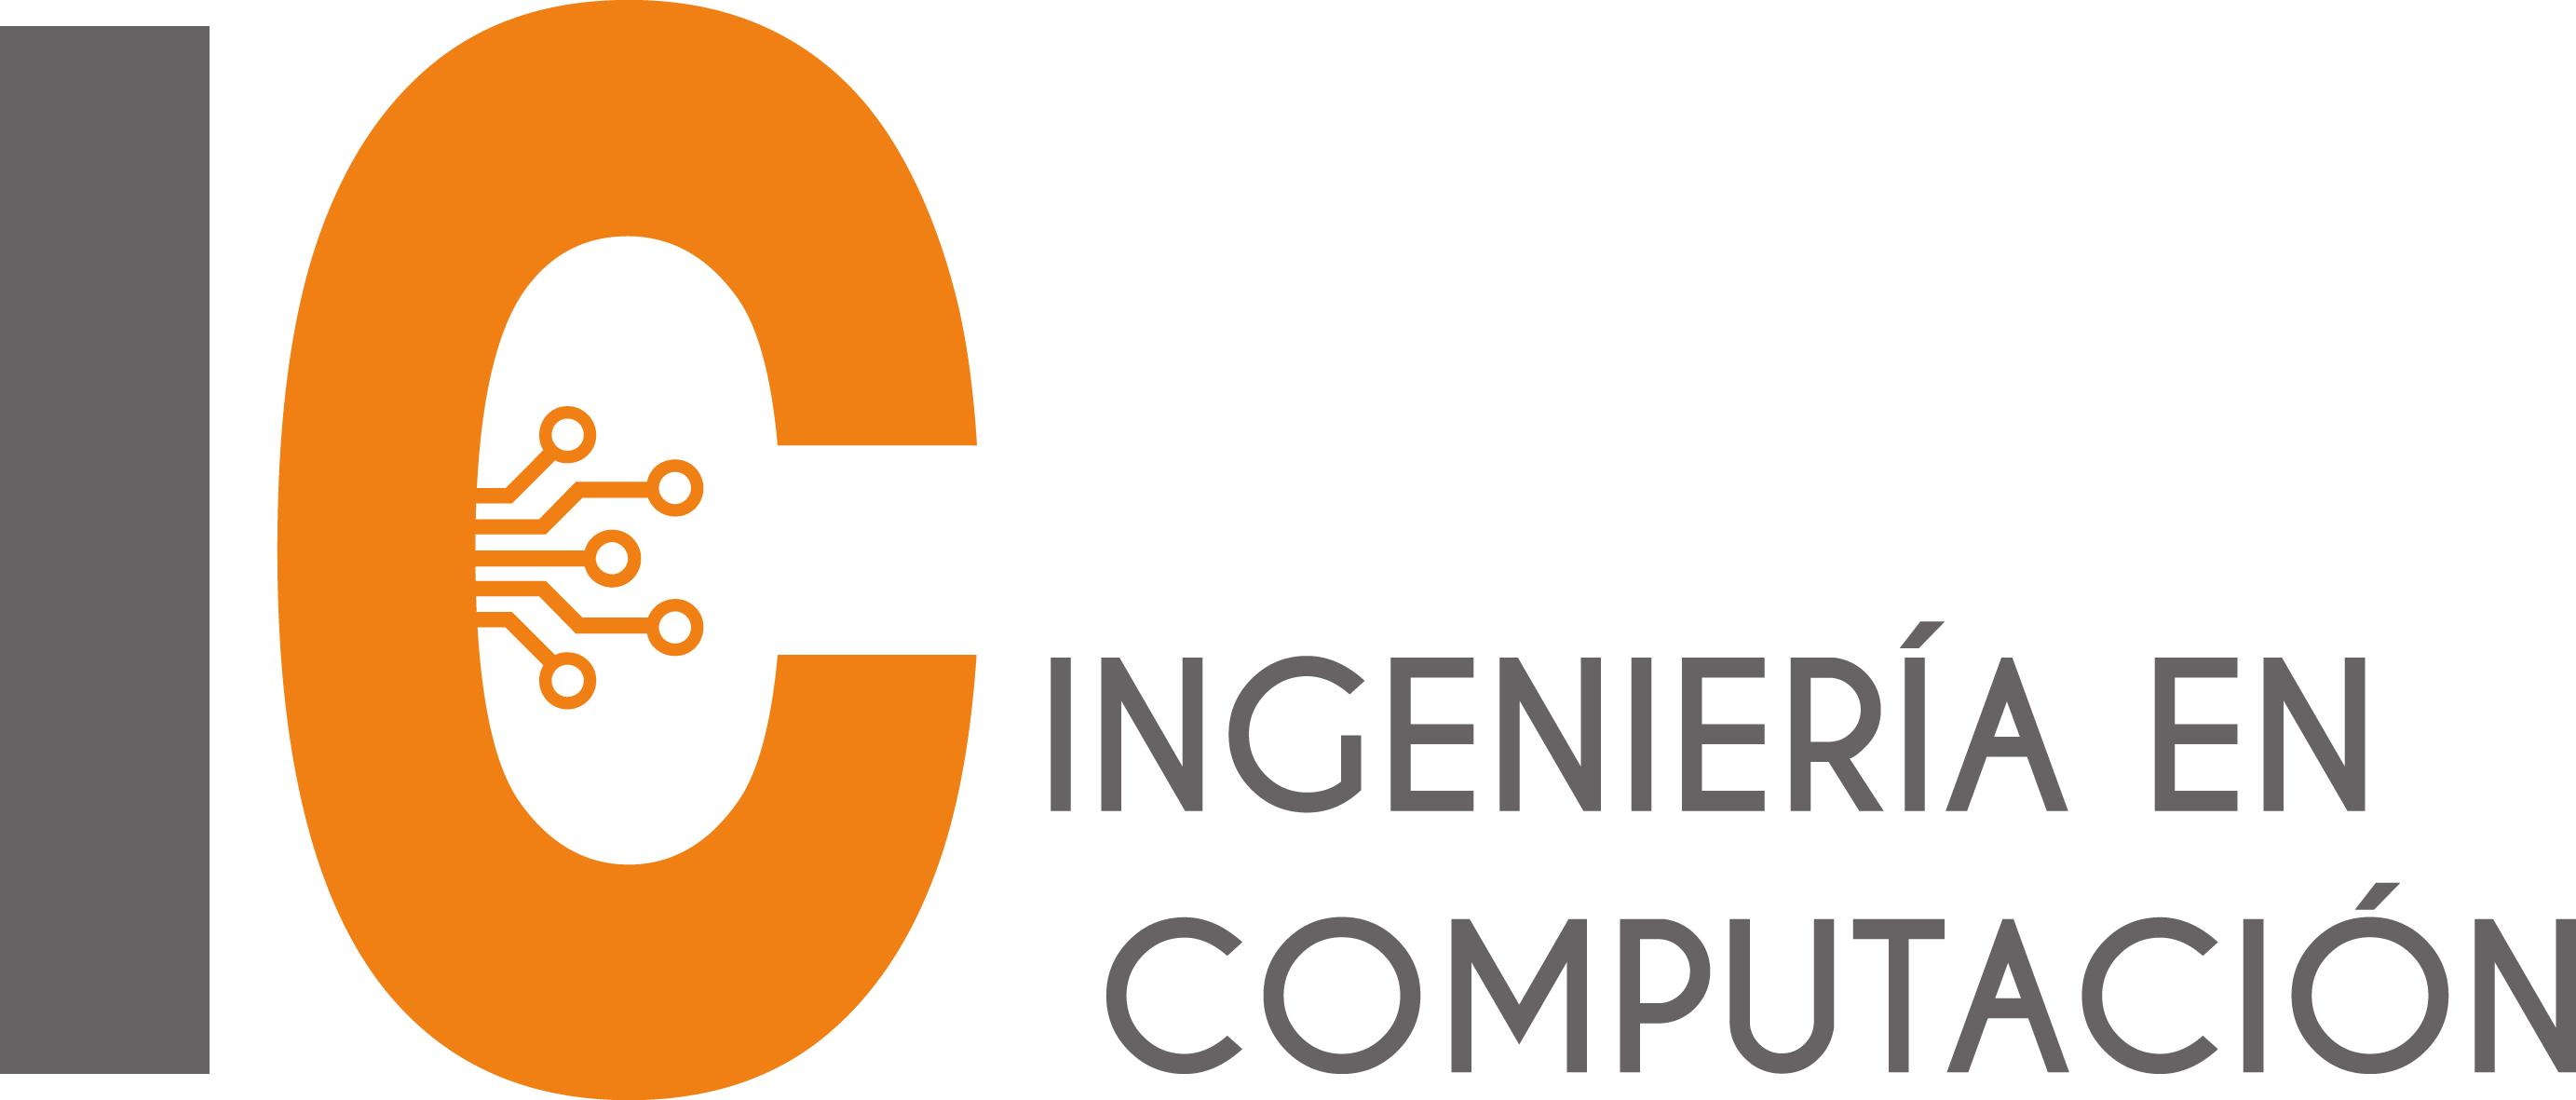 Ingeniería en Computación